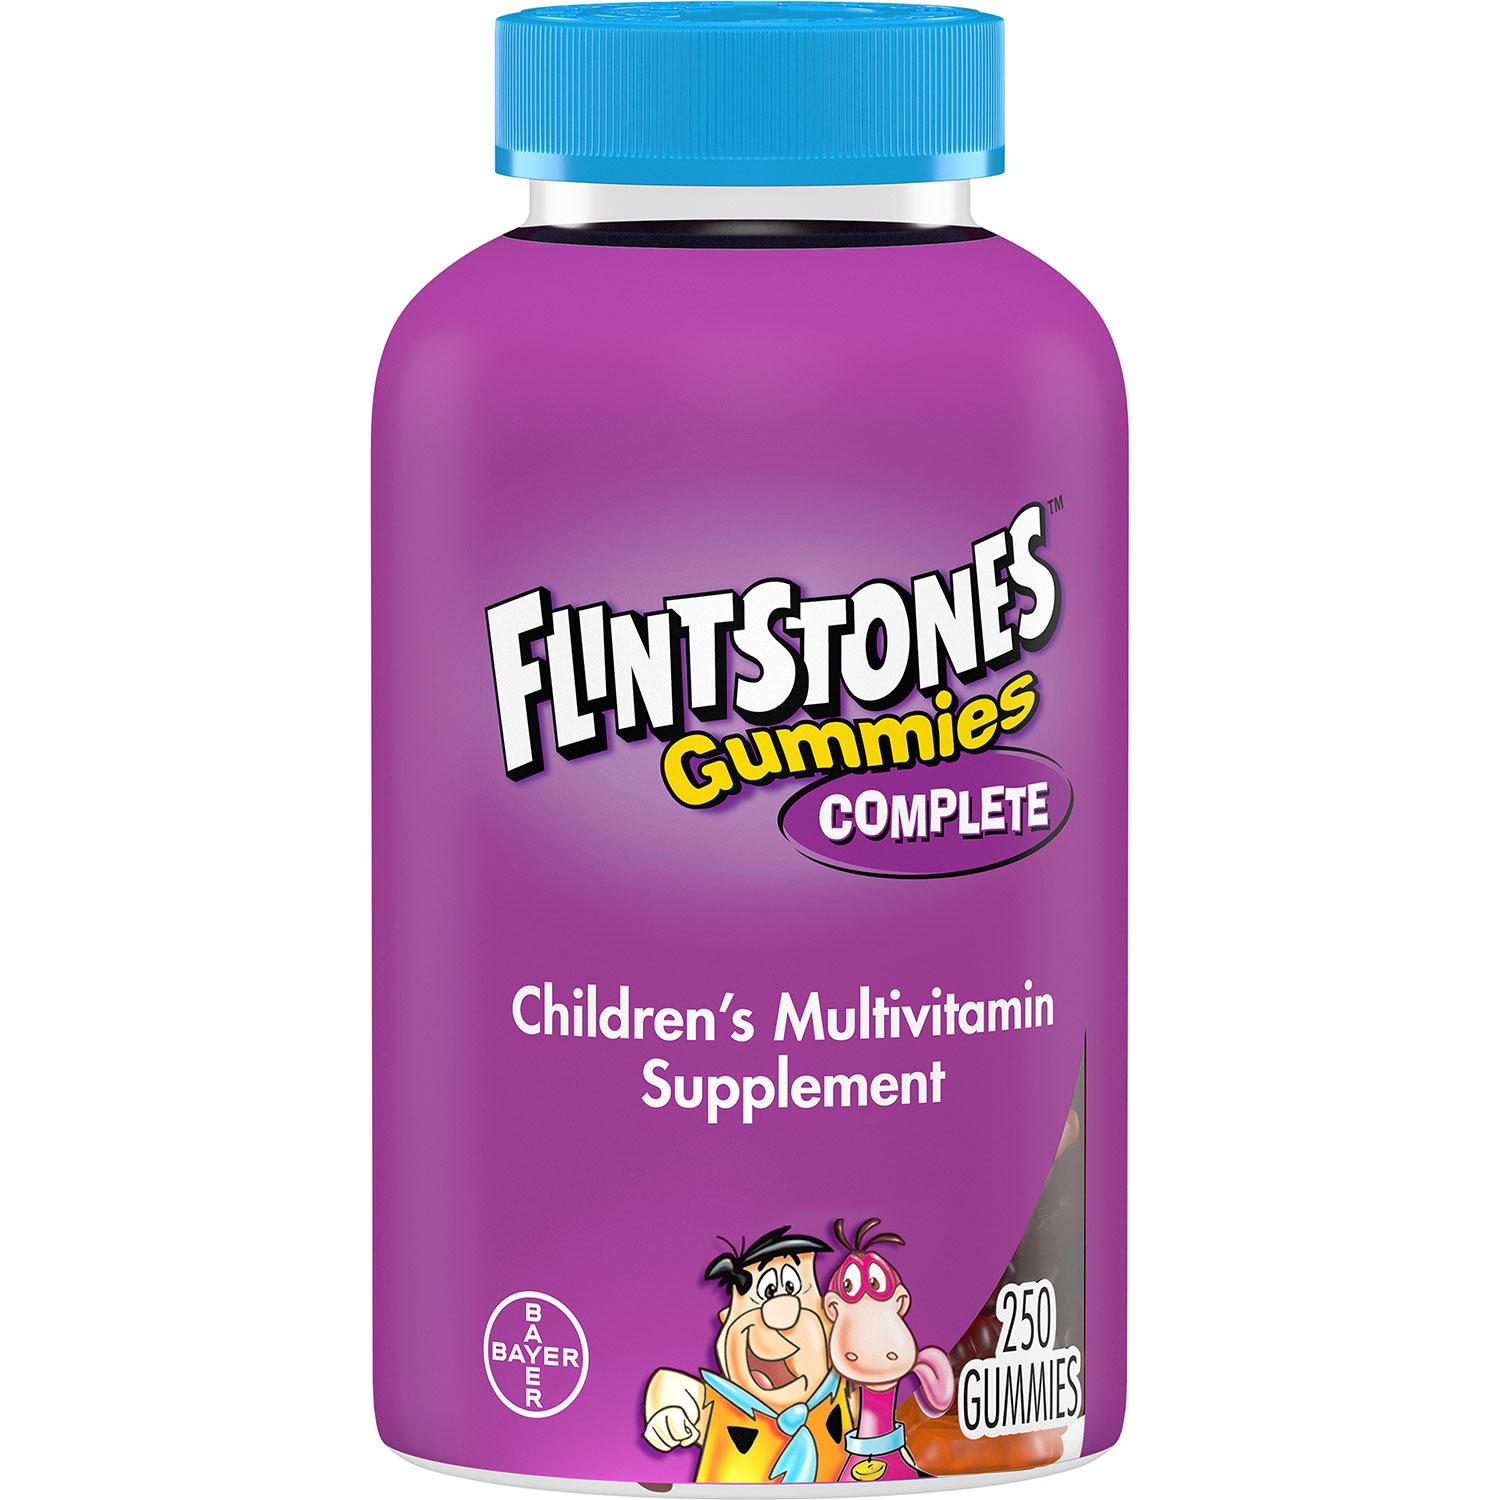 Flintstones Complete Multivitamin Gummies 250 Ct - 016500553823